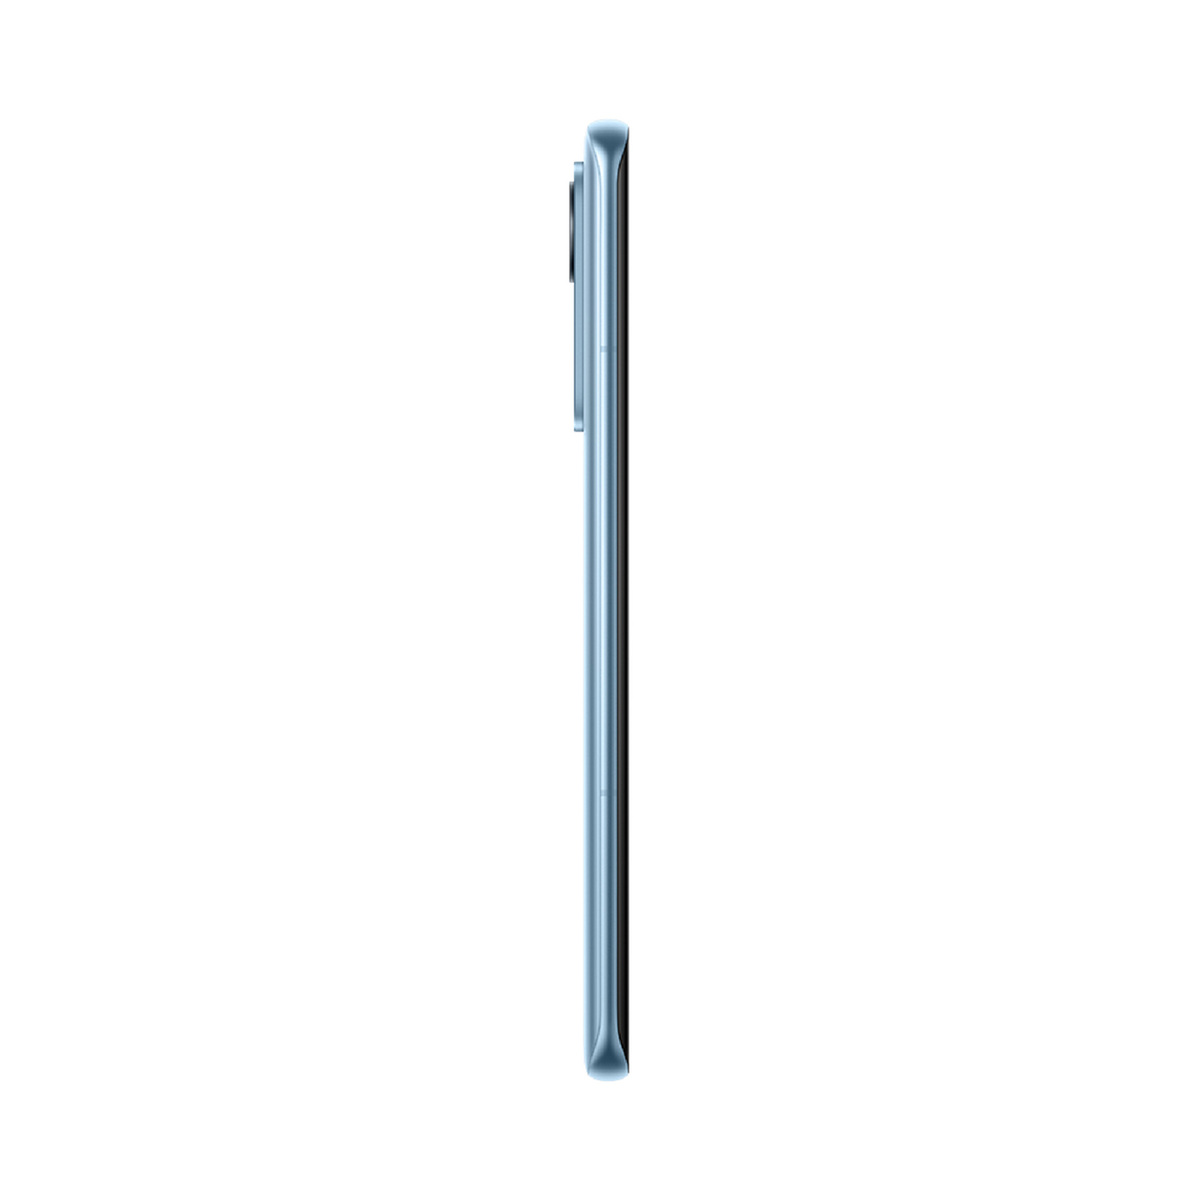 Xiaomi Mi 12,8GB,256GB 5G Blue